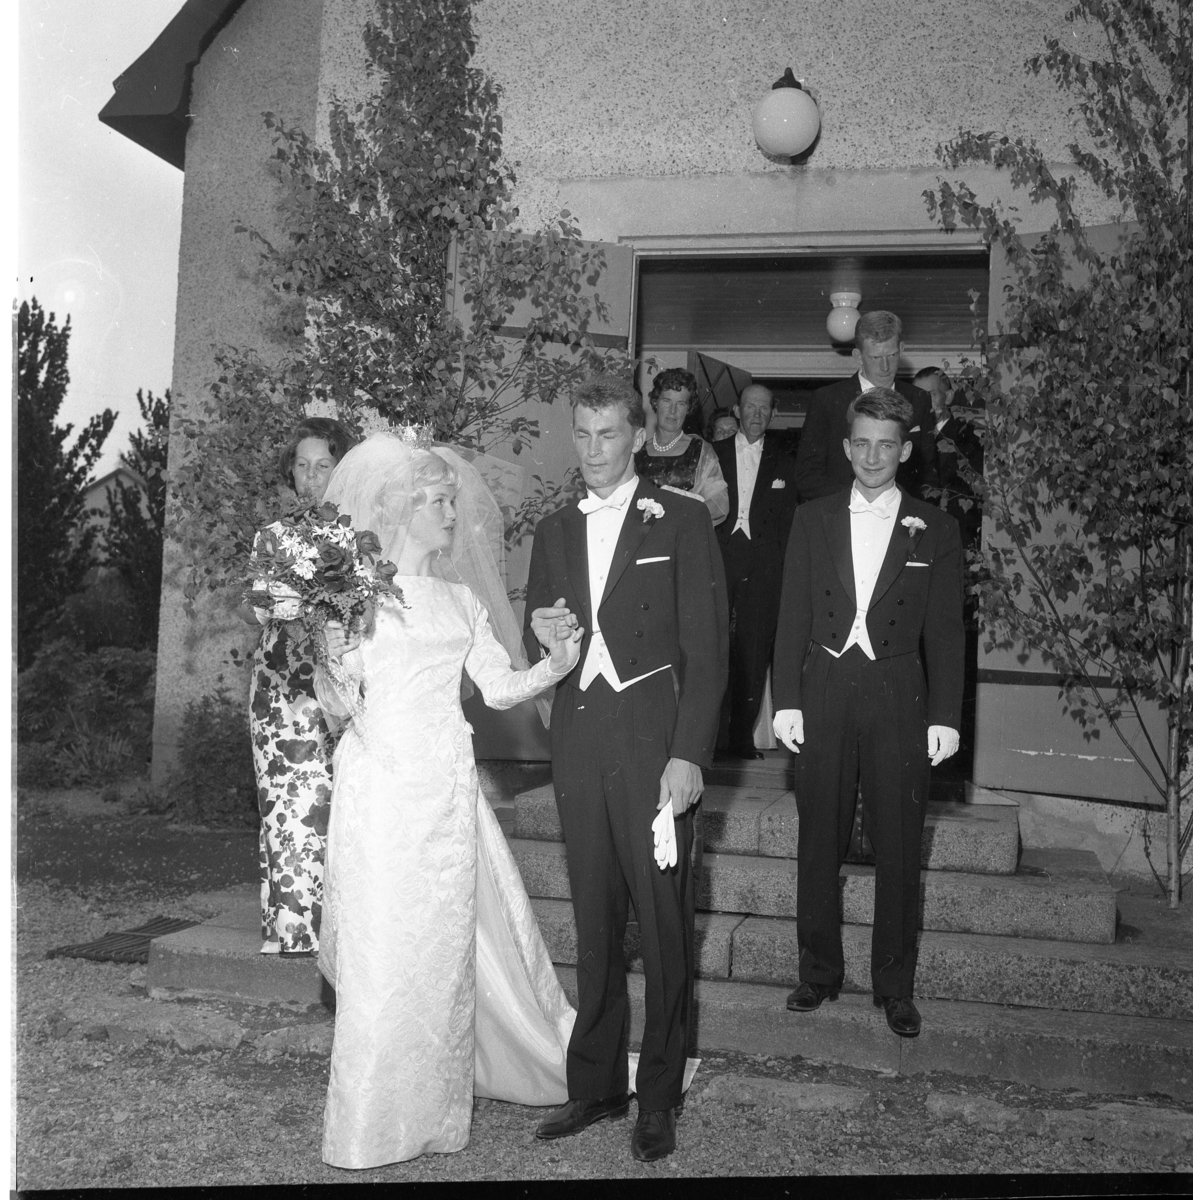 Nygifta Rolf Nilsson och Lisbeth Johansson utanför Örserums kyrka. Till vänster om bruden står hennes syster Birgit Johansson och till höger om brudgummen står Göran Malm.